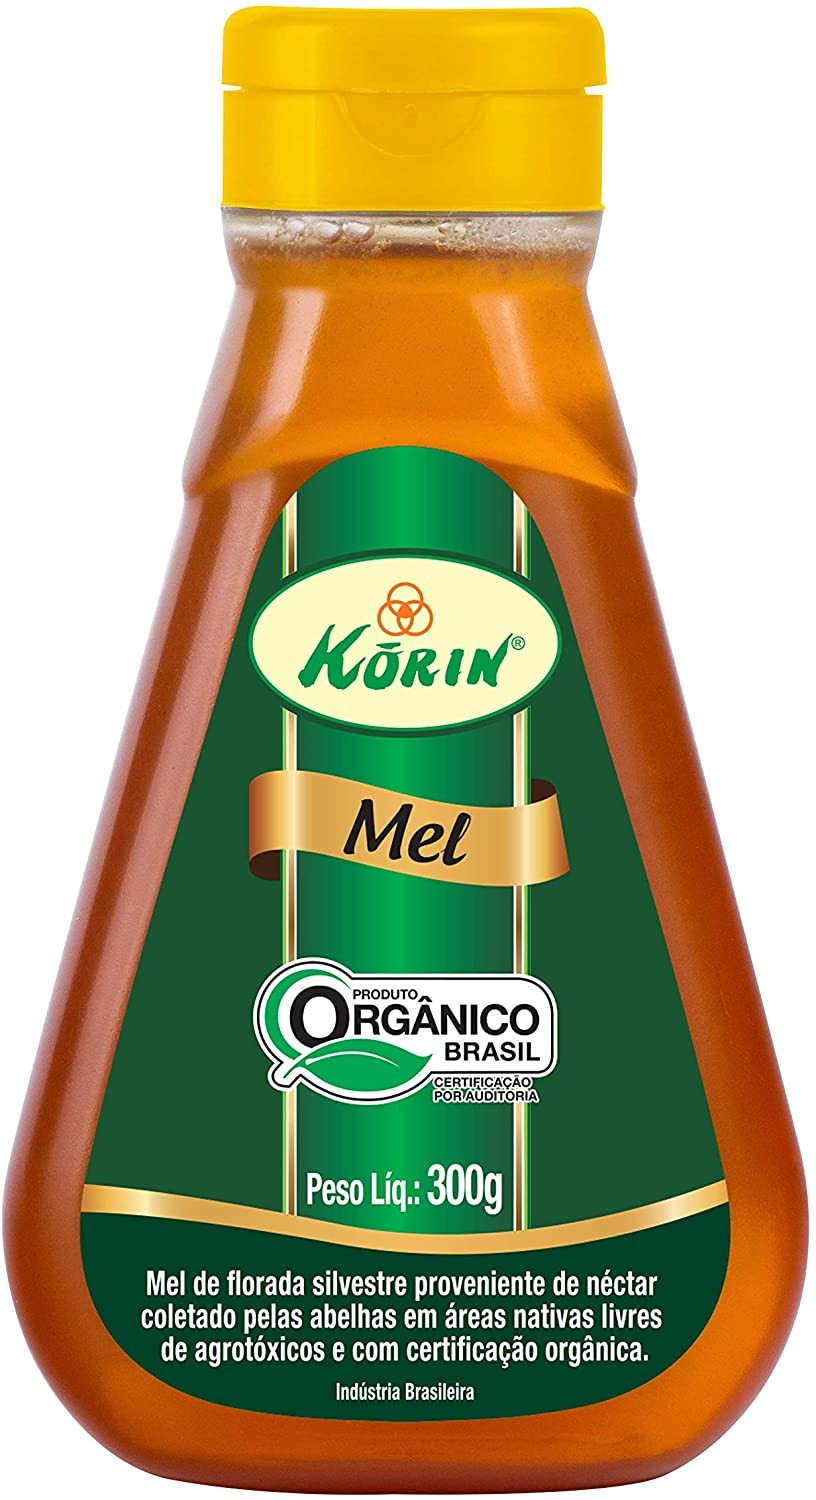 Mel bisnaga Orgânico, 300g, Korin (Foto: Reprodução/ Amazon)